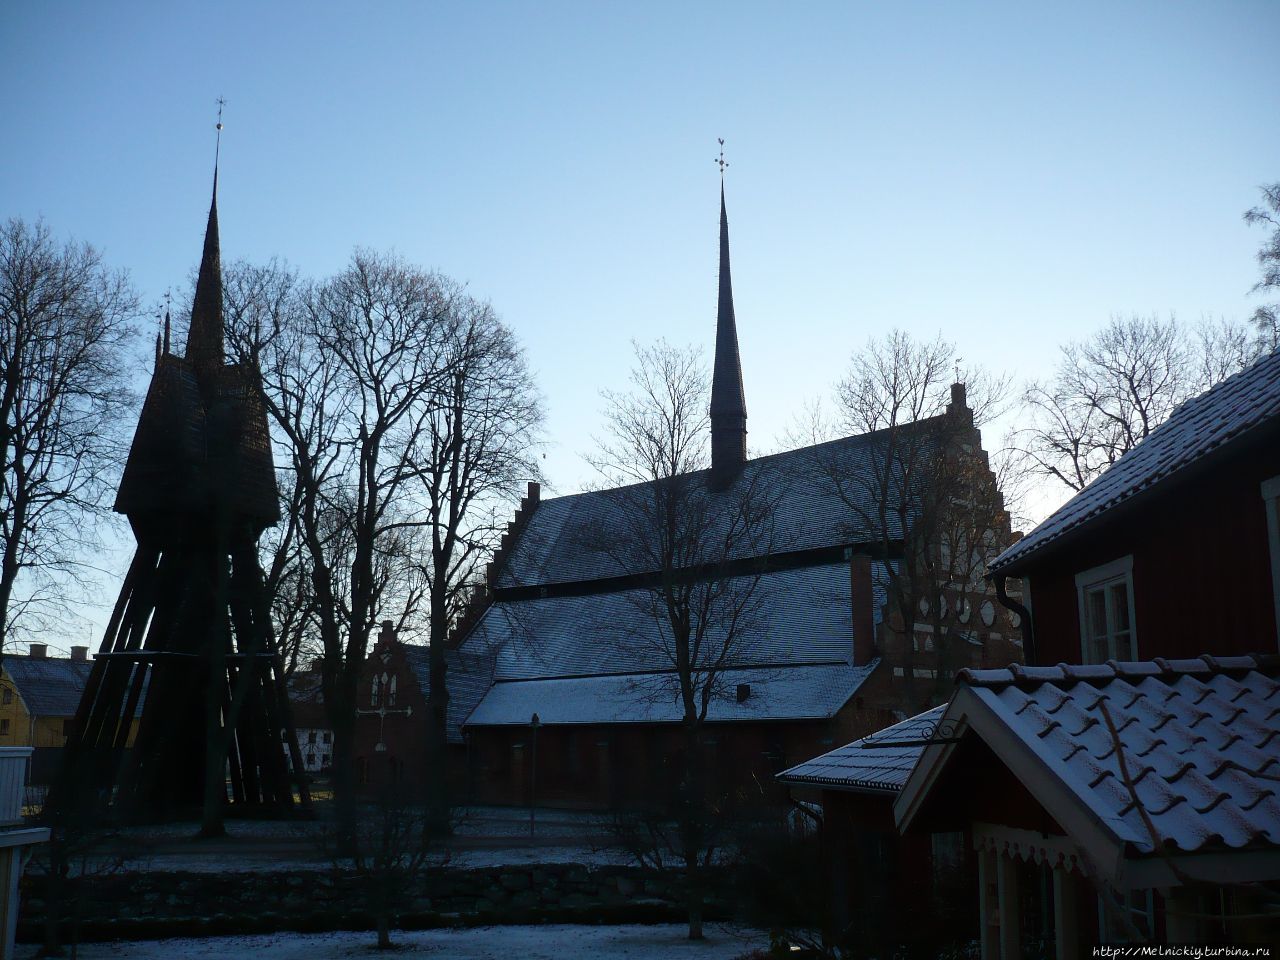 Церковь Святого Лаврения Сёдерчёпинг, Швеция